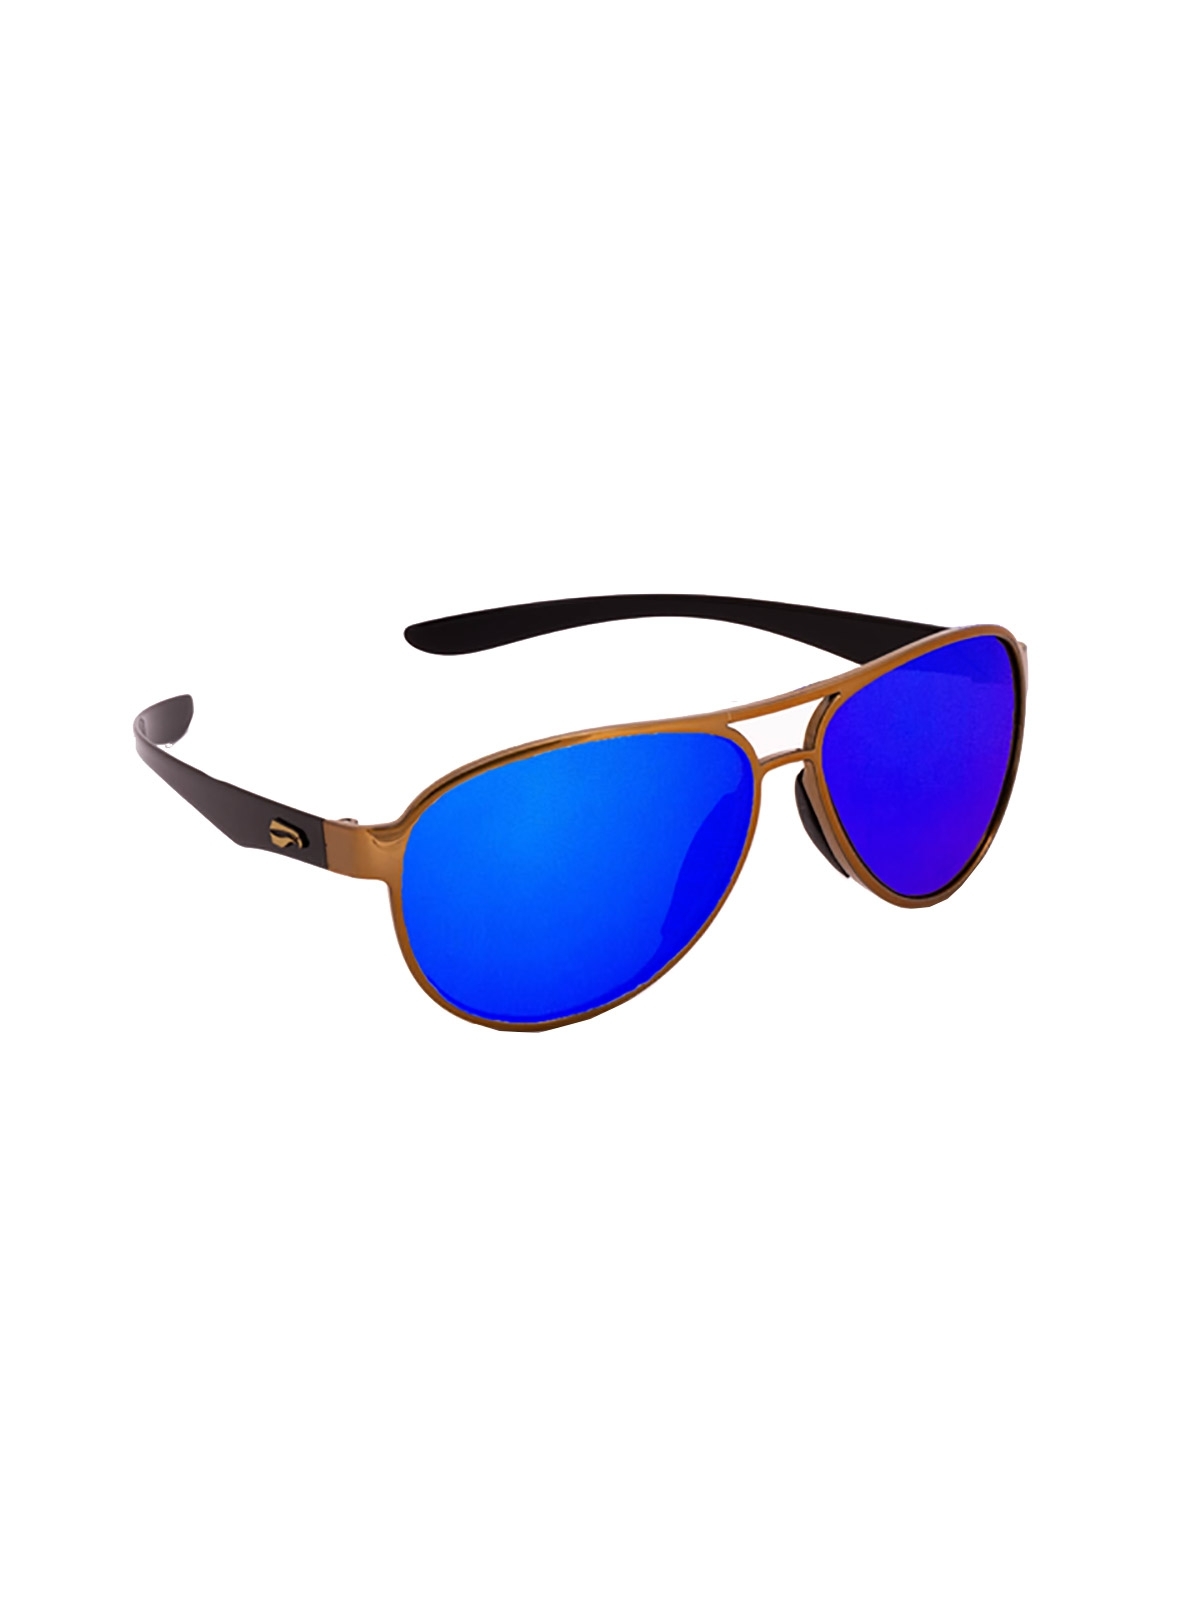 Flying Eyes Sunglasses Kestrel Aviator - Golden Front Frame, Mirrored Sapphire Lenses